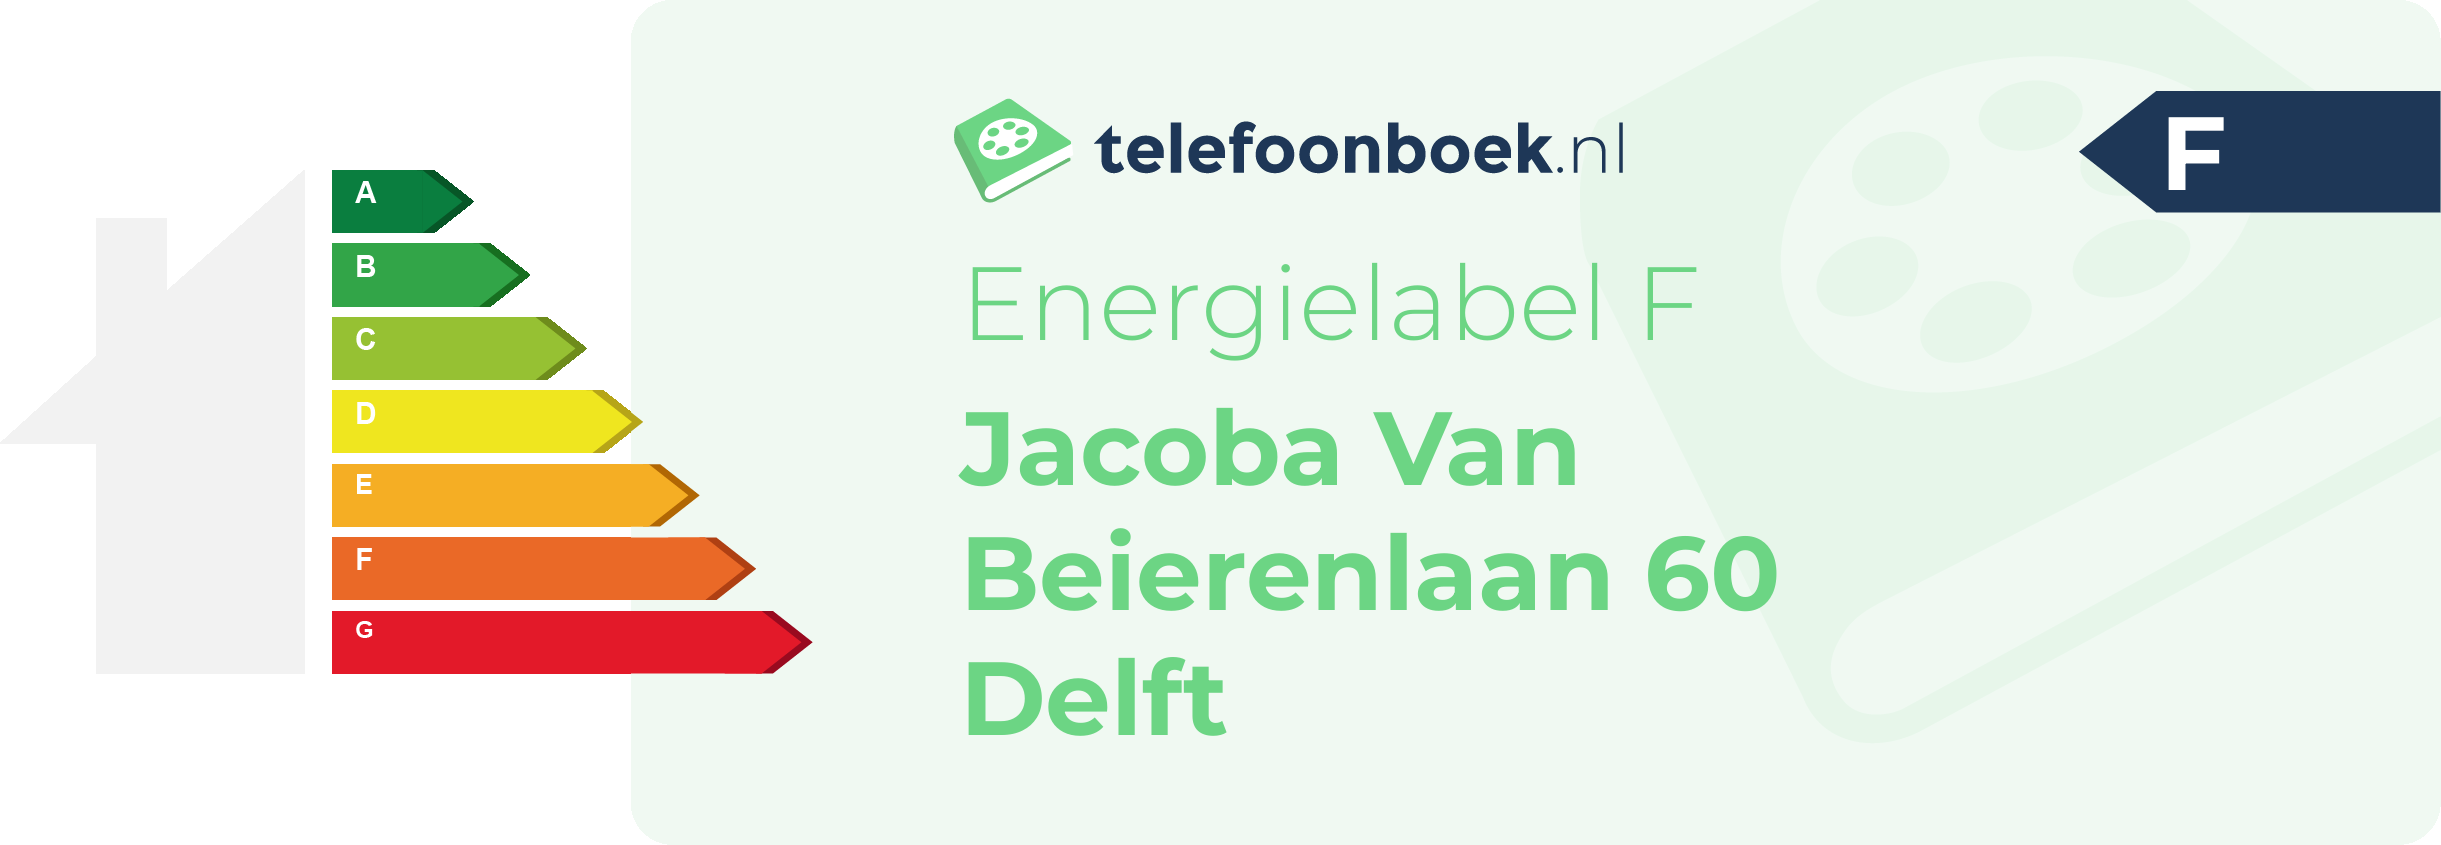 Energielabel Jacoba Van Beierenlaan 60 Delft